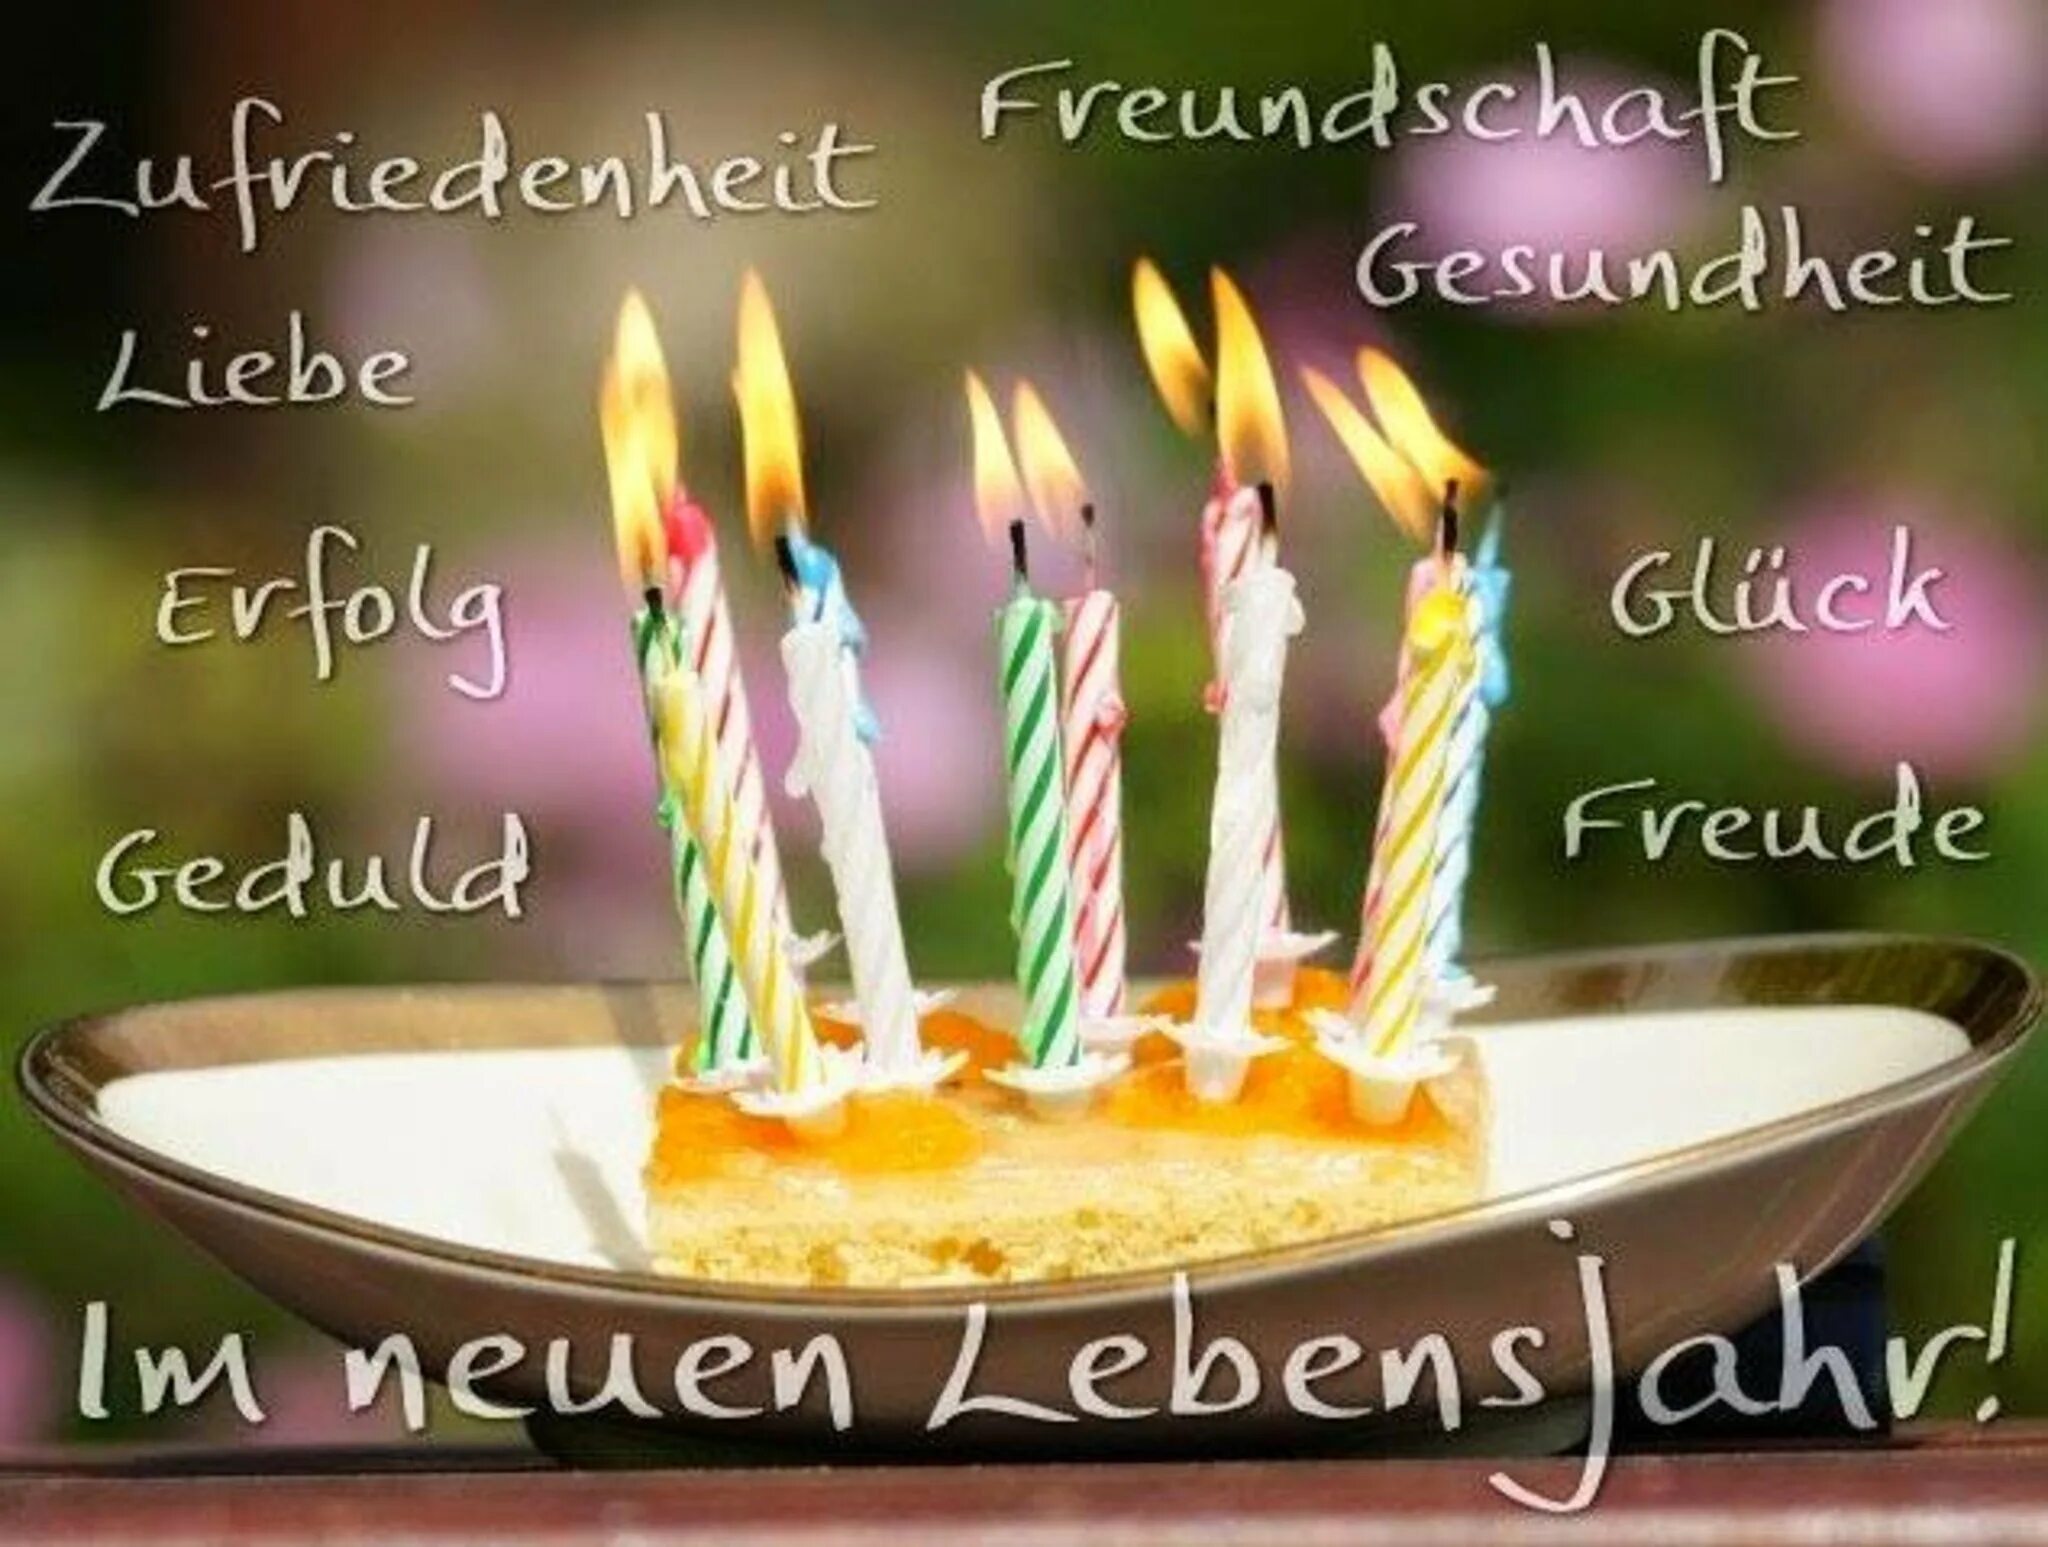 Поздравление с днем рождения на немецком. Открытка с днём рождения на немецком языке. Поздравление с др на немецком языке. Поздравления с днём рождения мужчине на немецком языке.